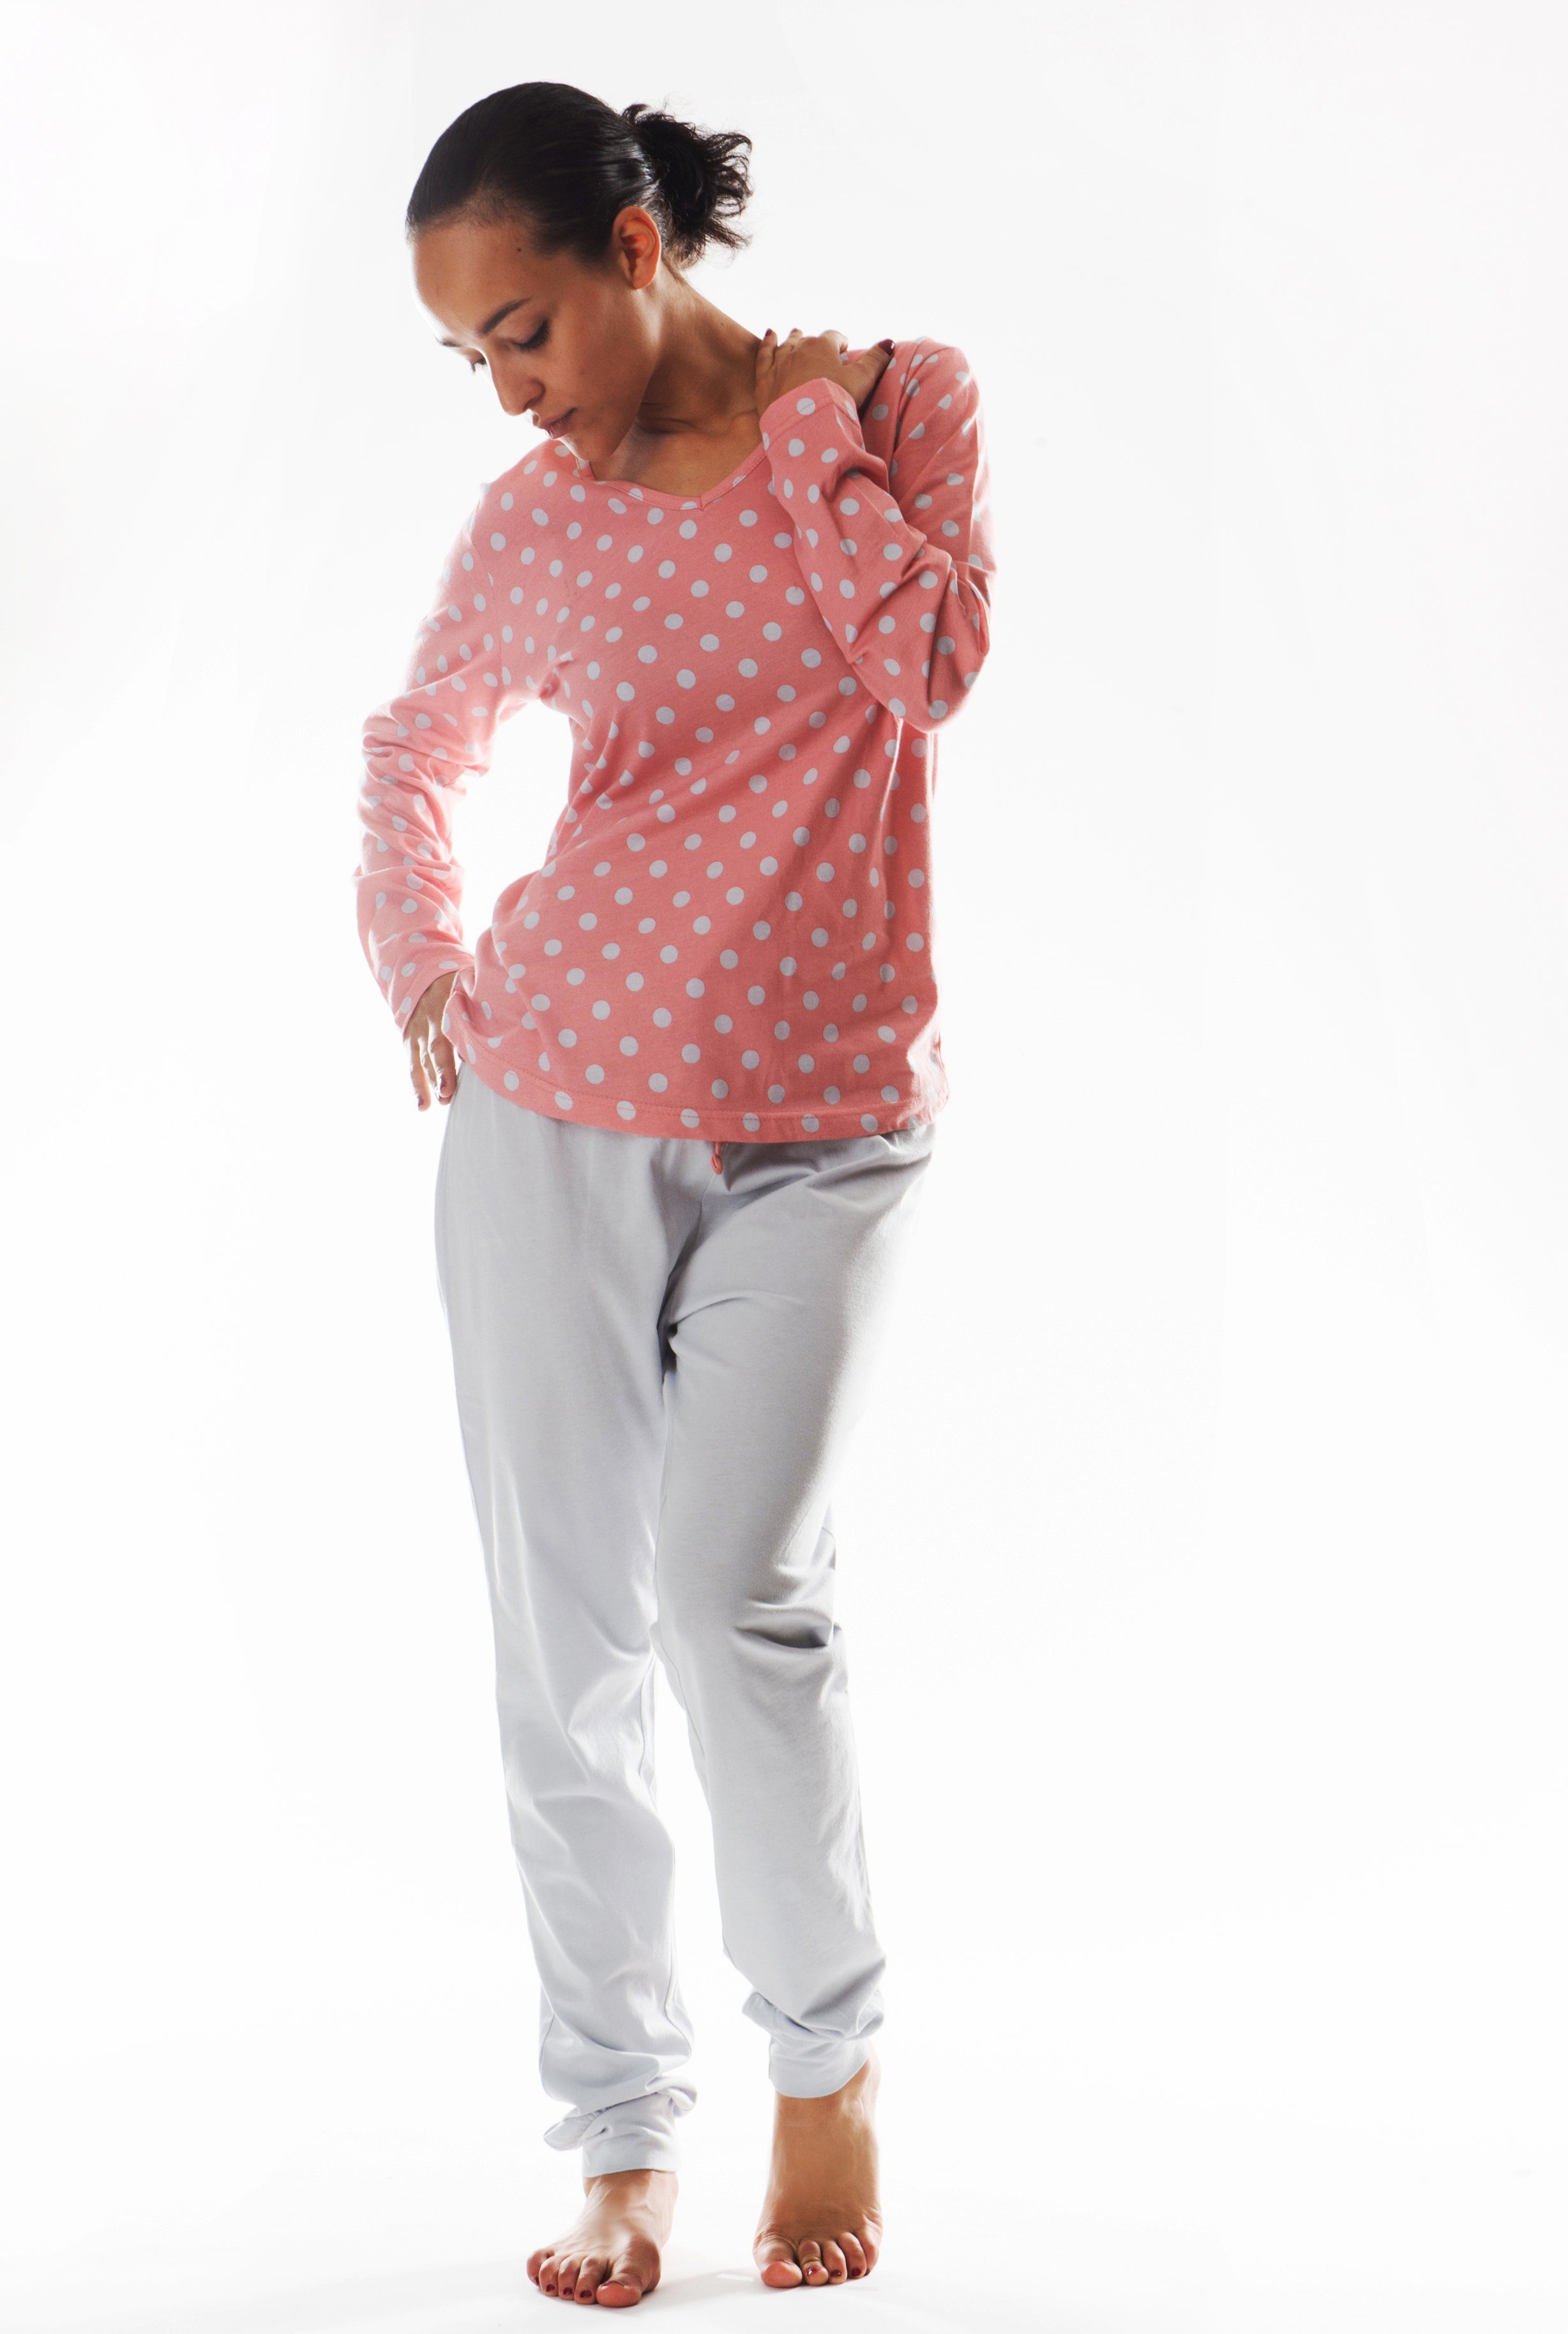 aus Pyjama reiner Consult-Tex Pyjama (Packung) rosa/grau DW990G Baumwolle Schlafanzug Damen